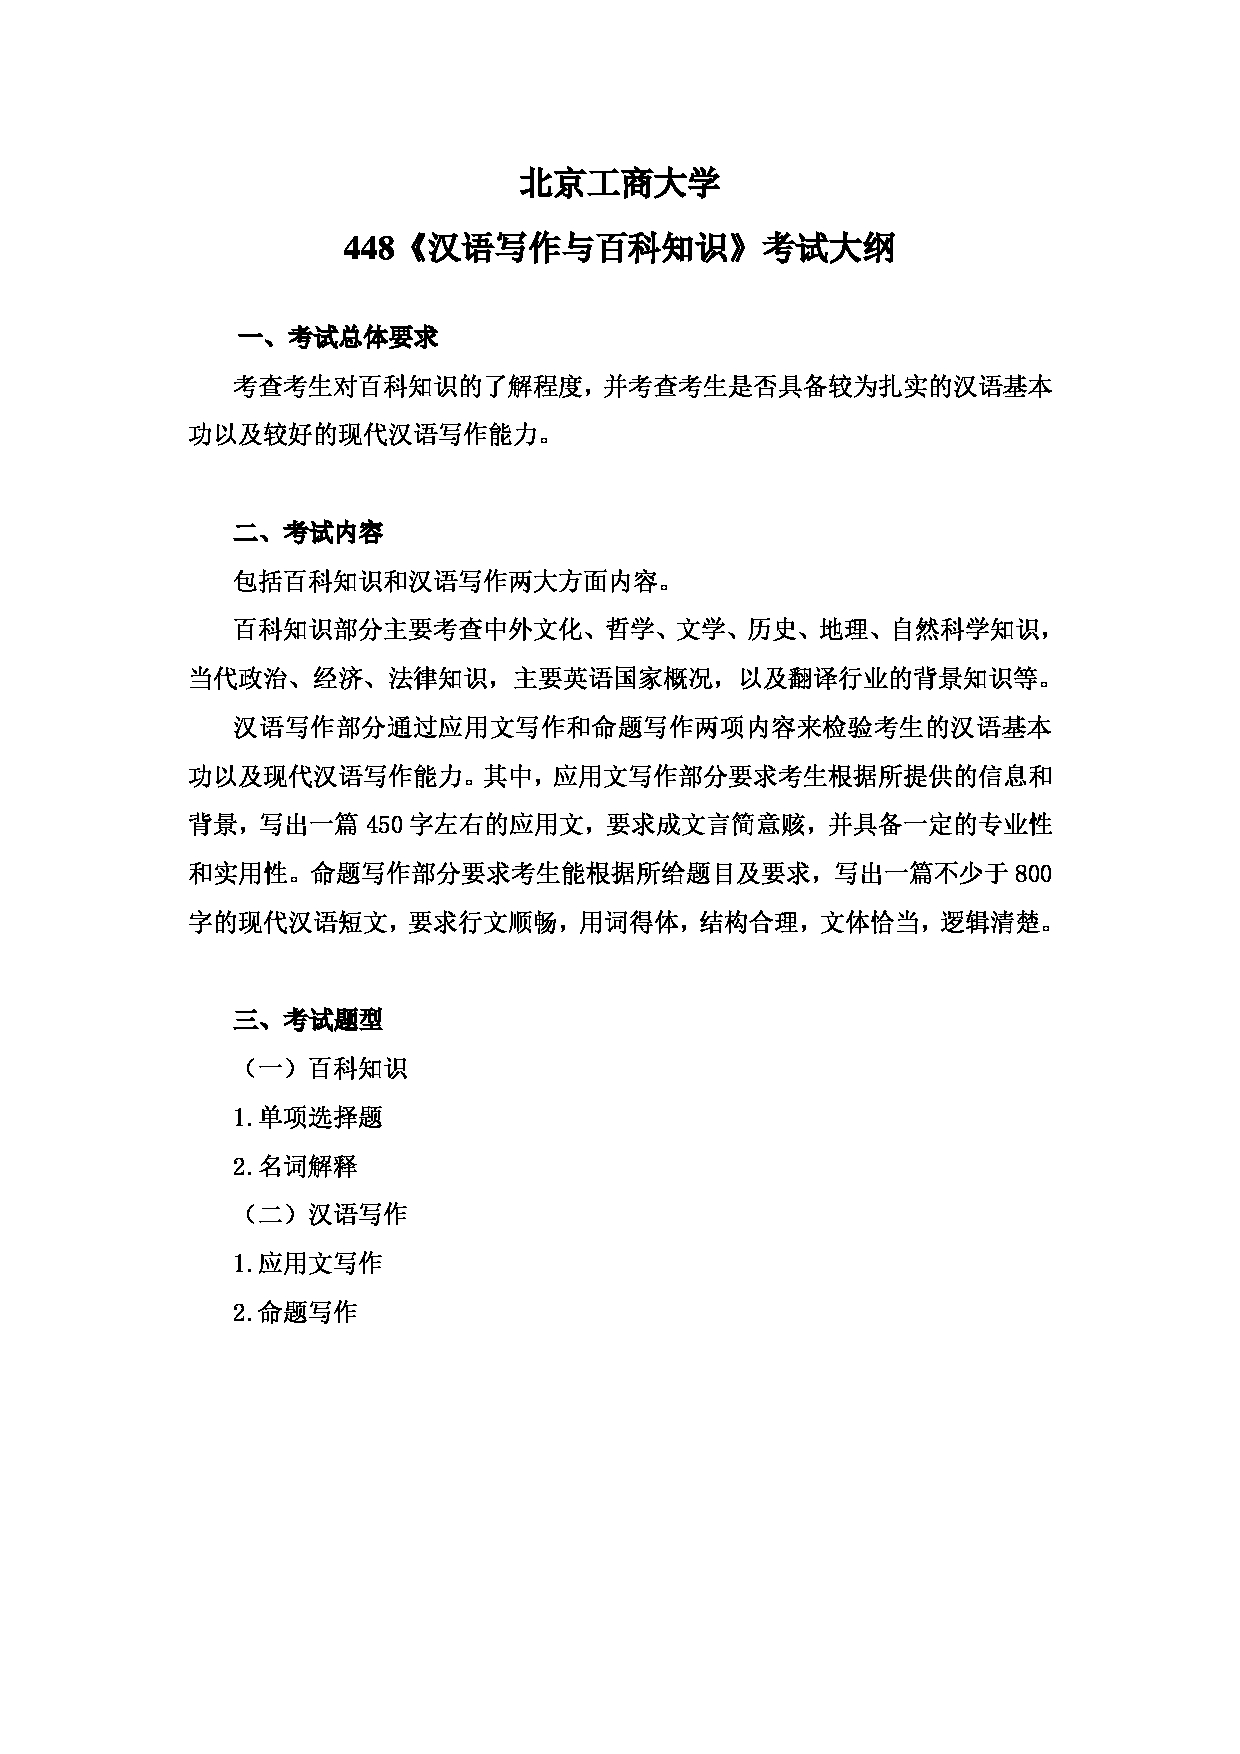 2023考研大纲：北京工商大学2023年考研初试科目 448汉语写作与百科知识 考试大纲第1页